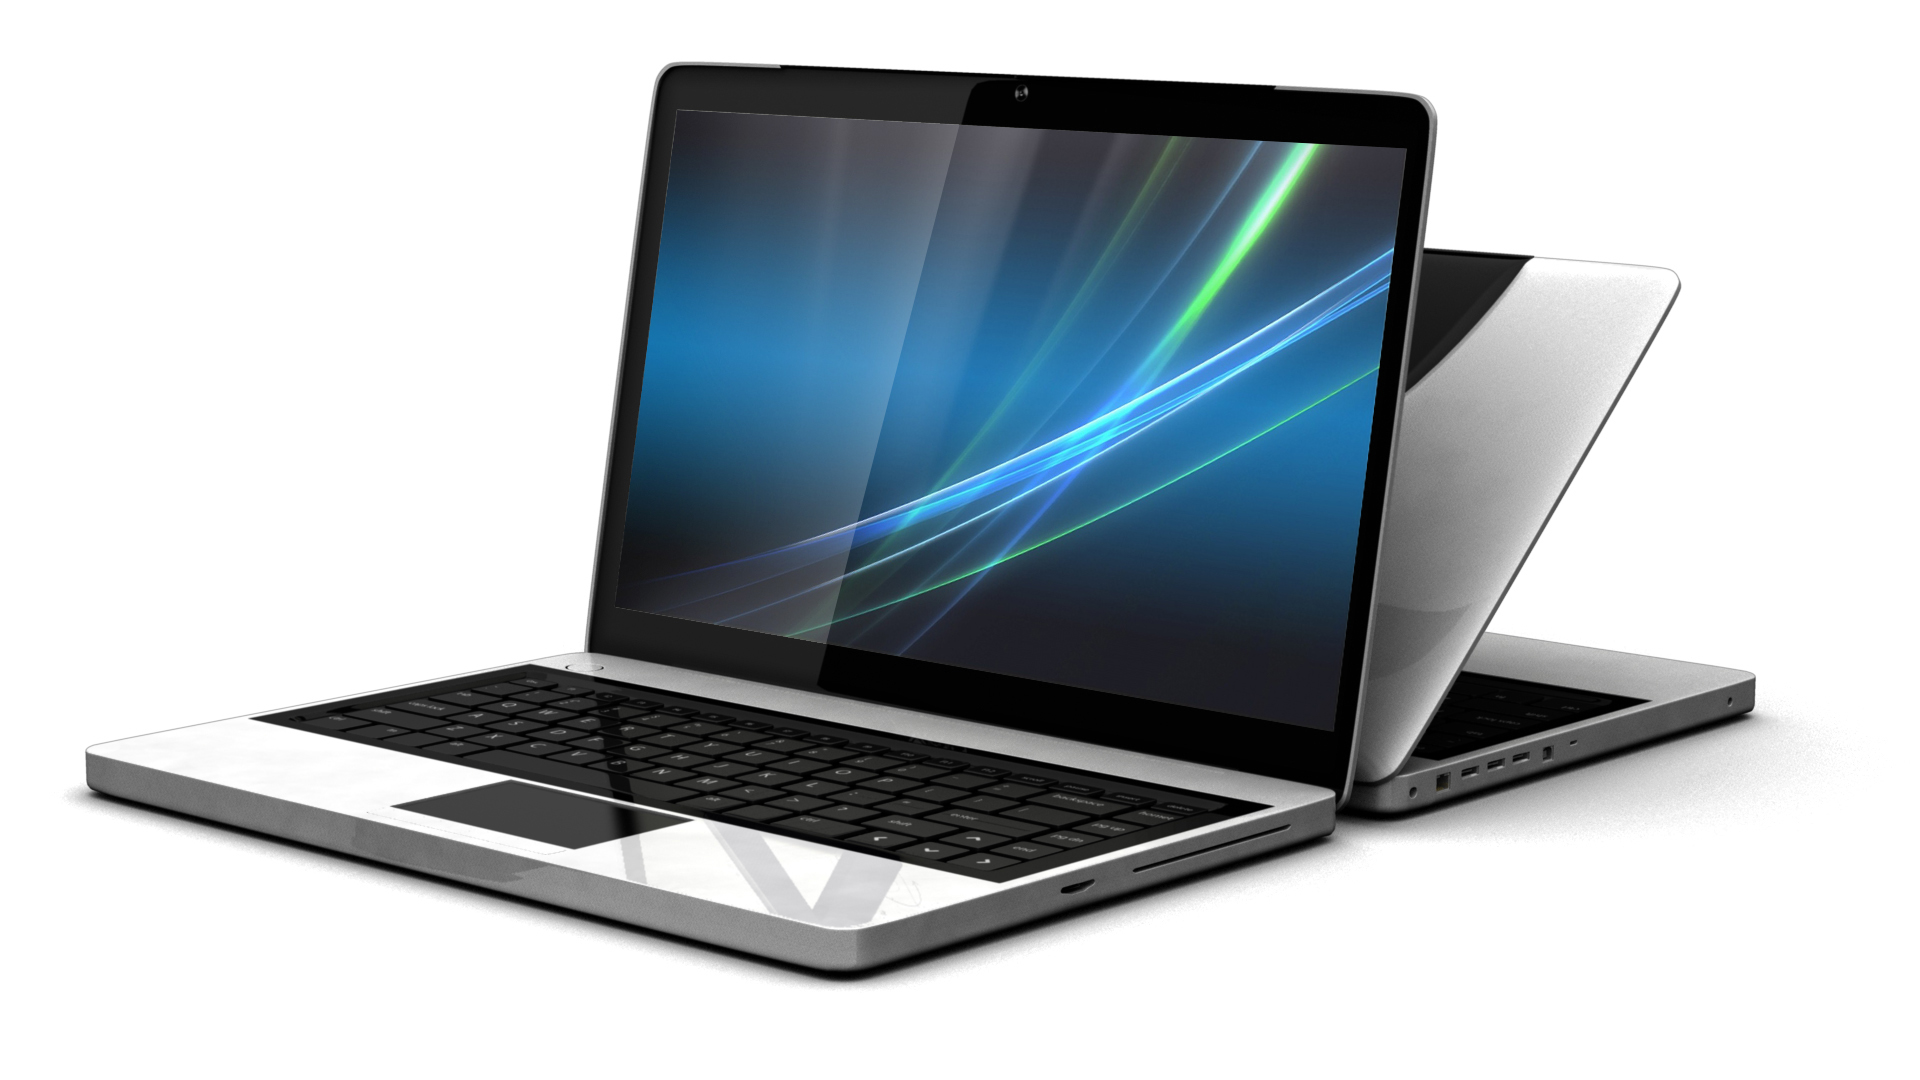 ¿Qué debes considerar antes de comprar una laptop nueva o usada?